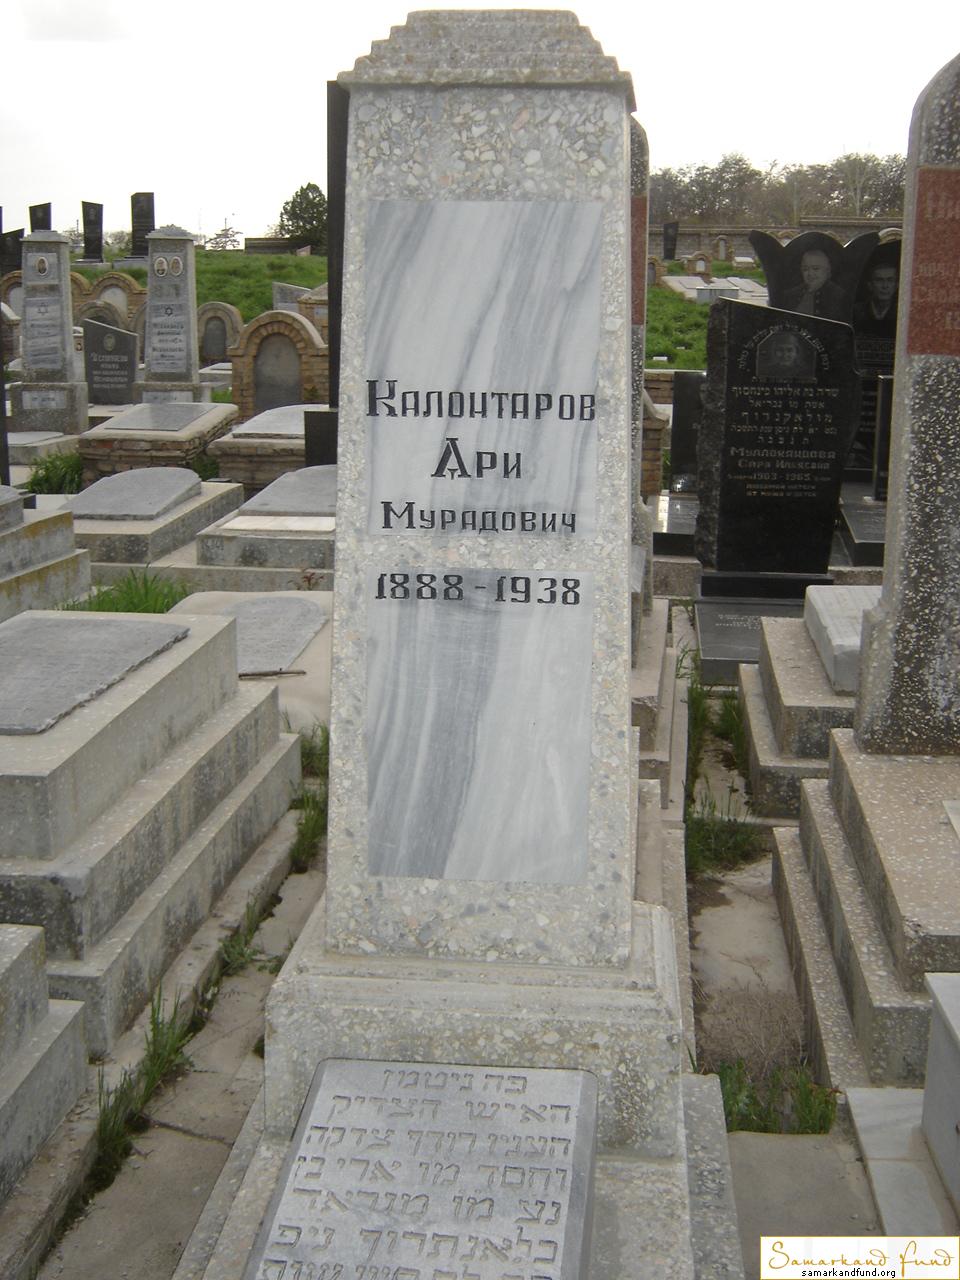 Калонтаров Ари Мурадович 1888 - 1938 зах. 73.93  №24.JPG